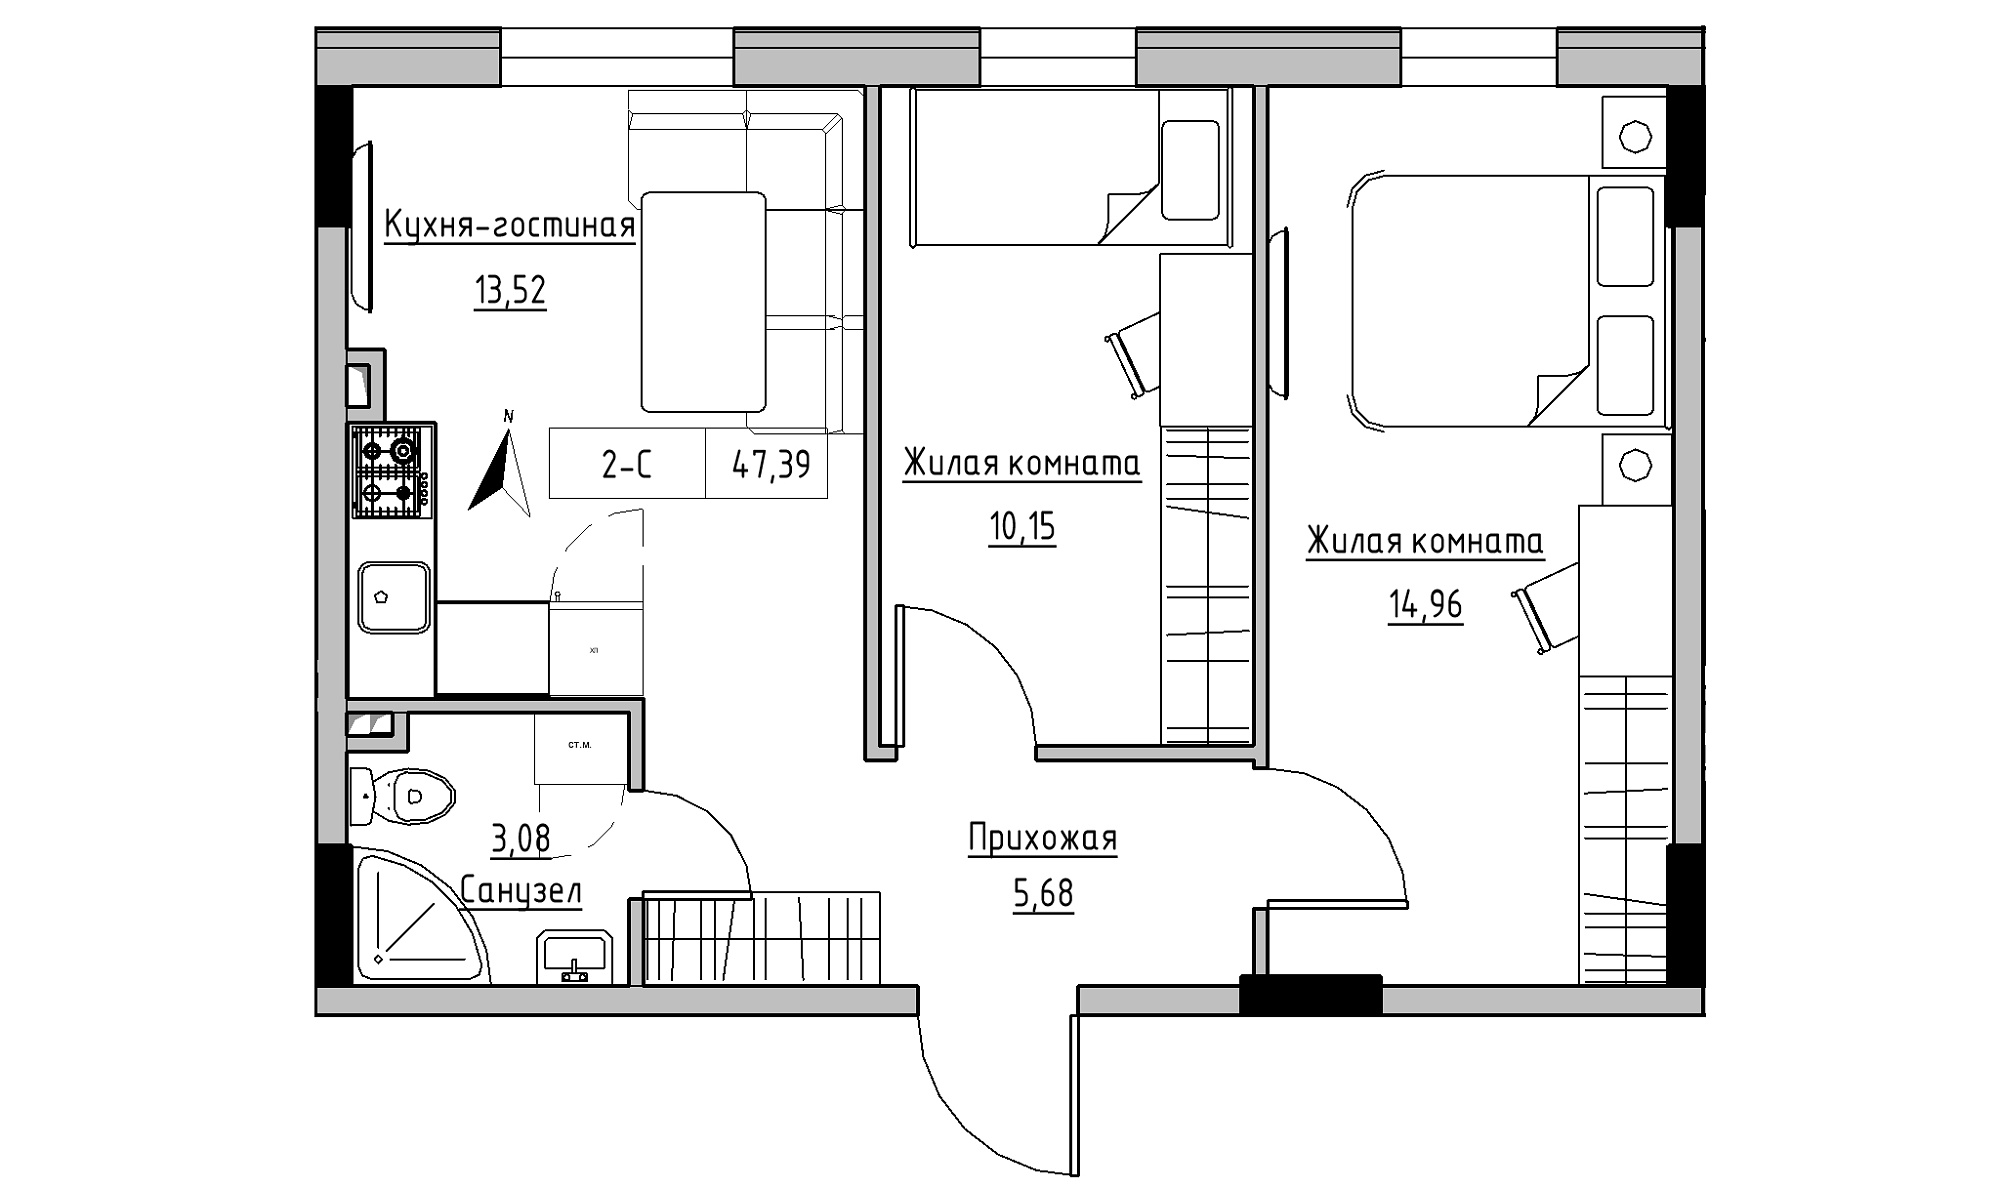 Планировка 2-к квартира площей 47.39м2, KS-025-01/0009.